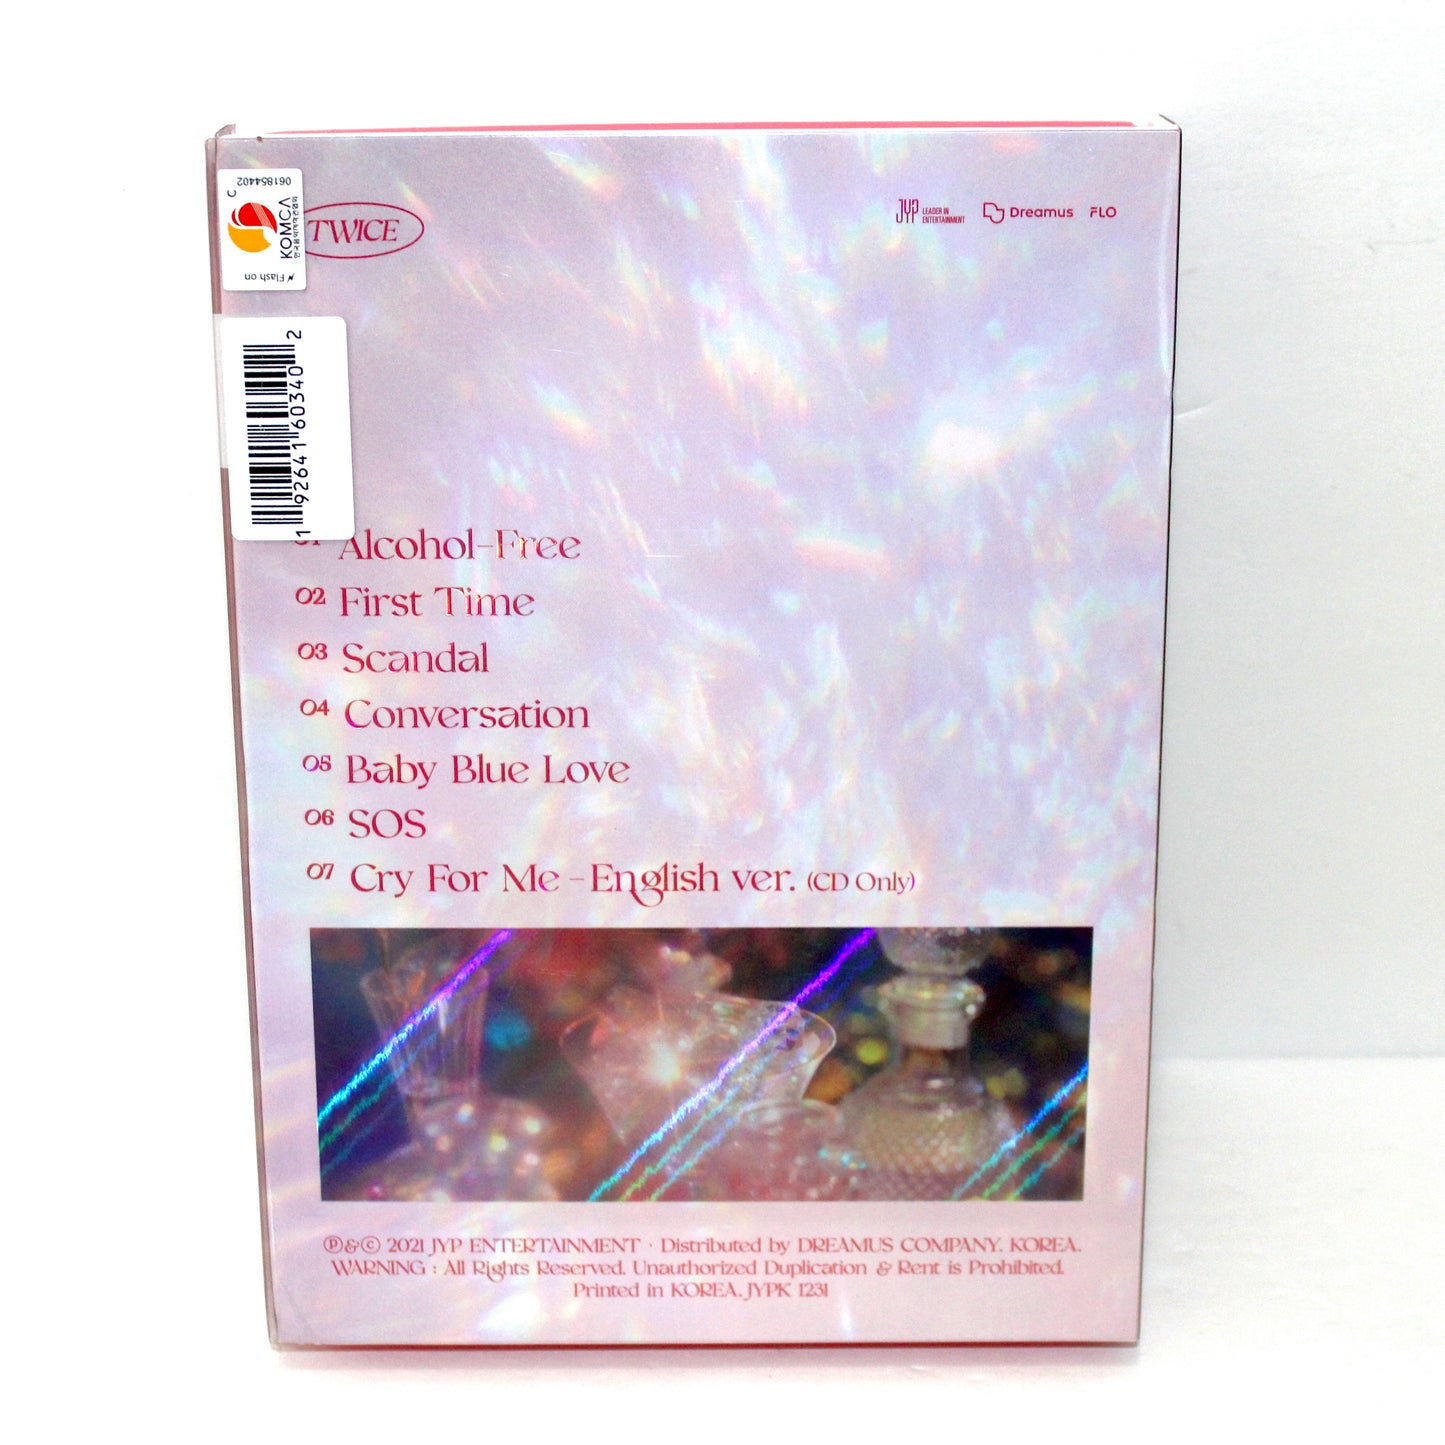 TWICE 10th Mini Album: Taste Of Love |  In Love Ver.